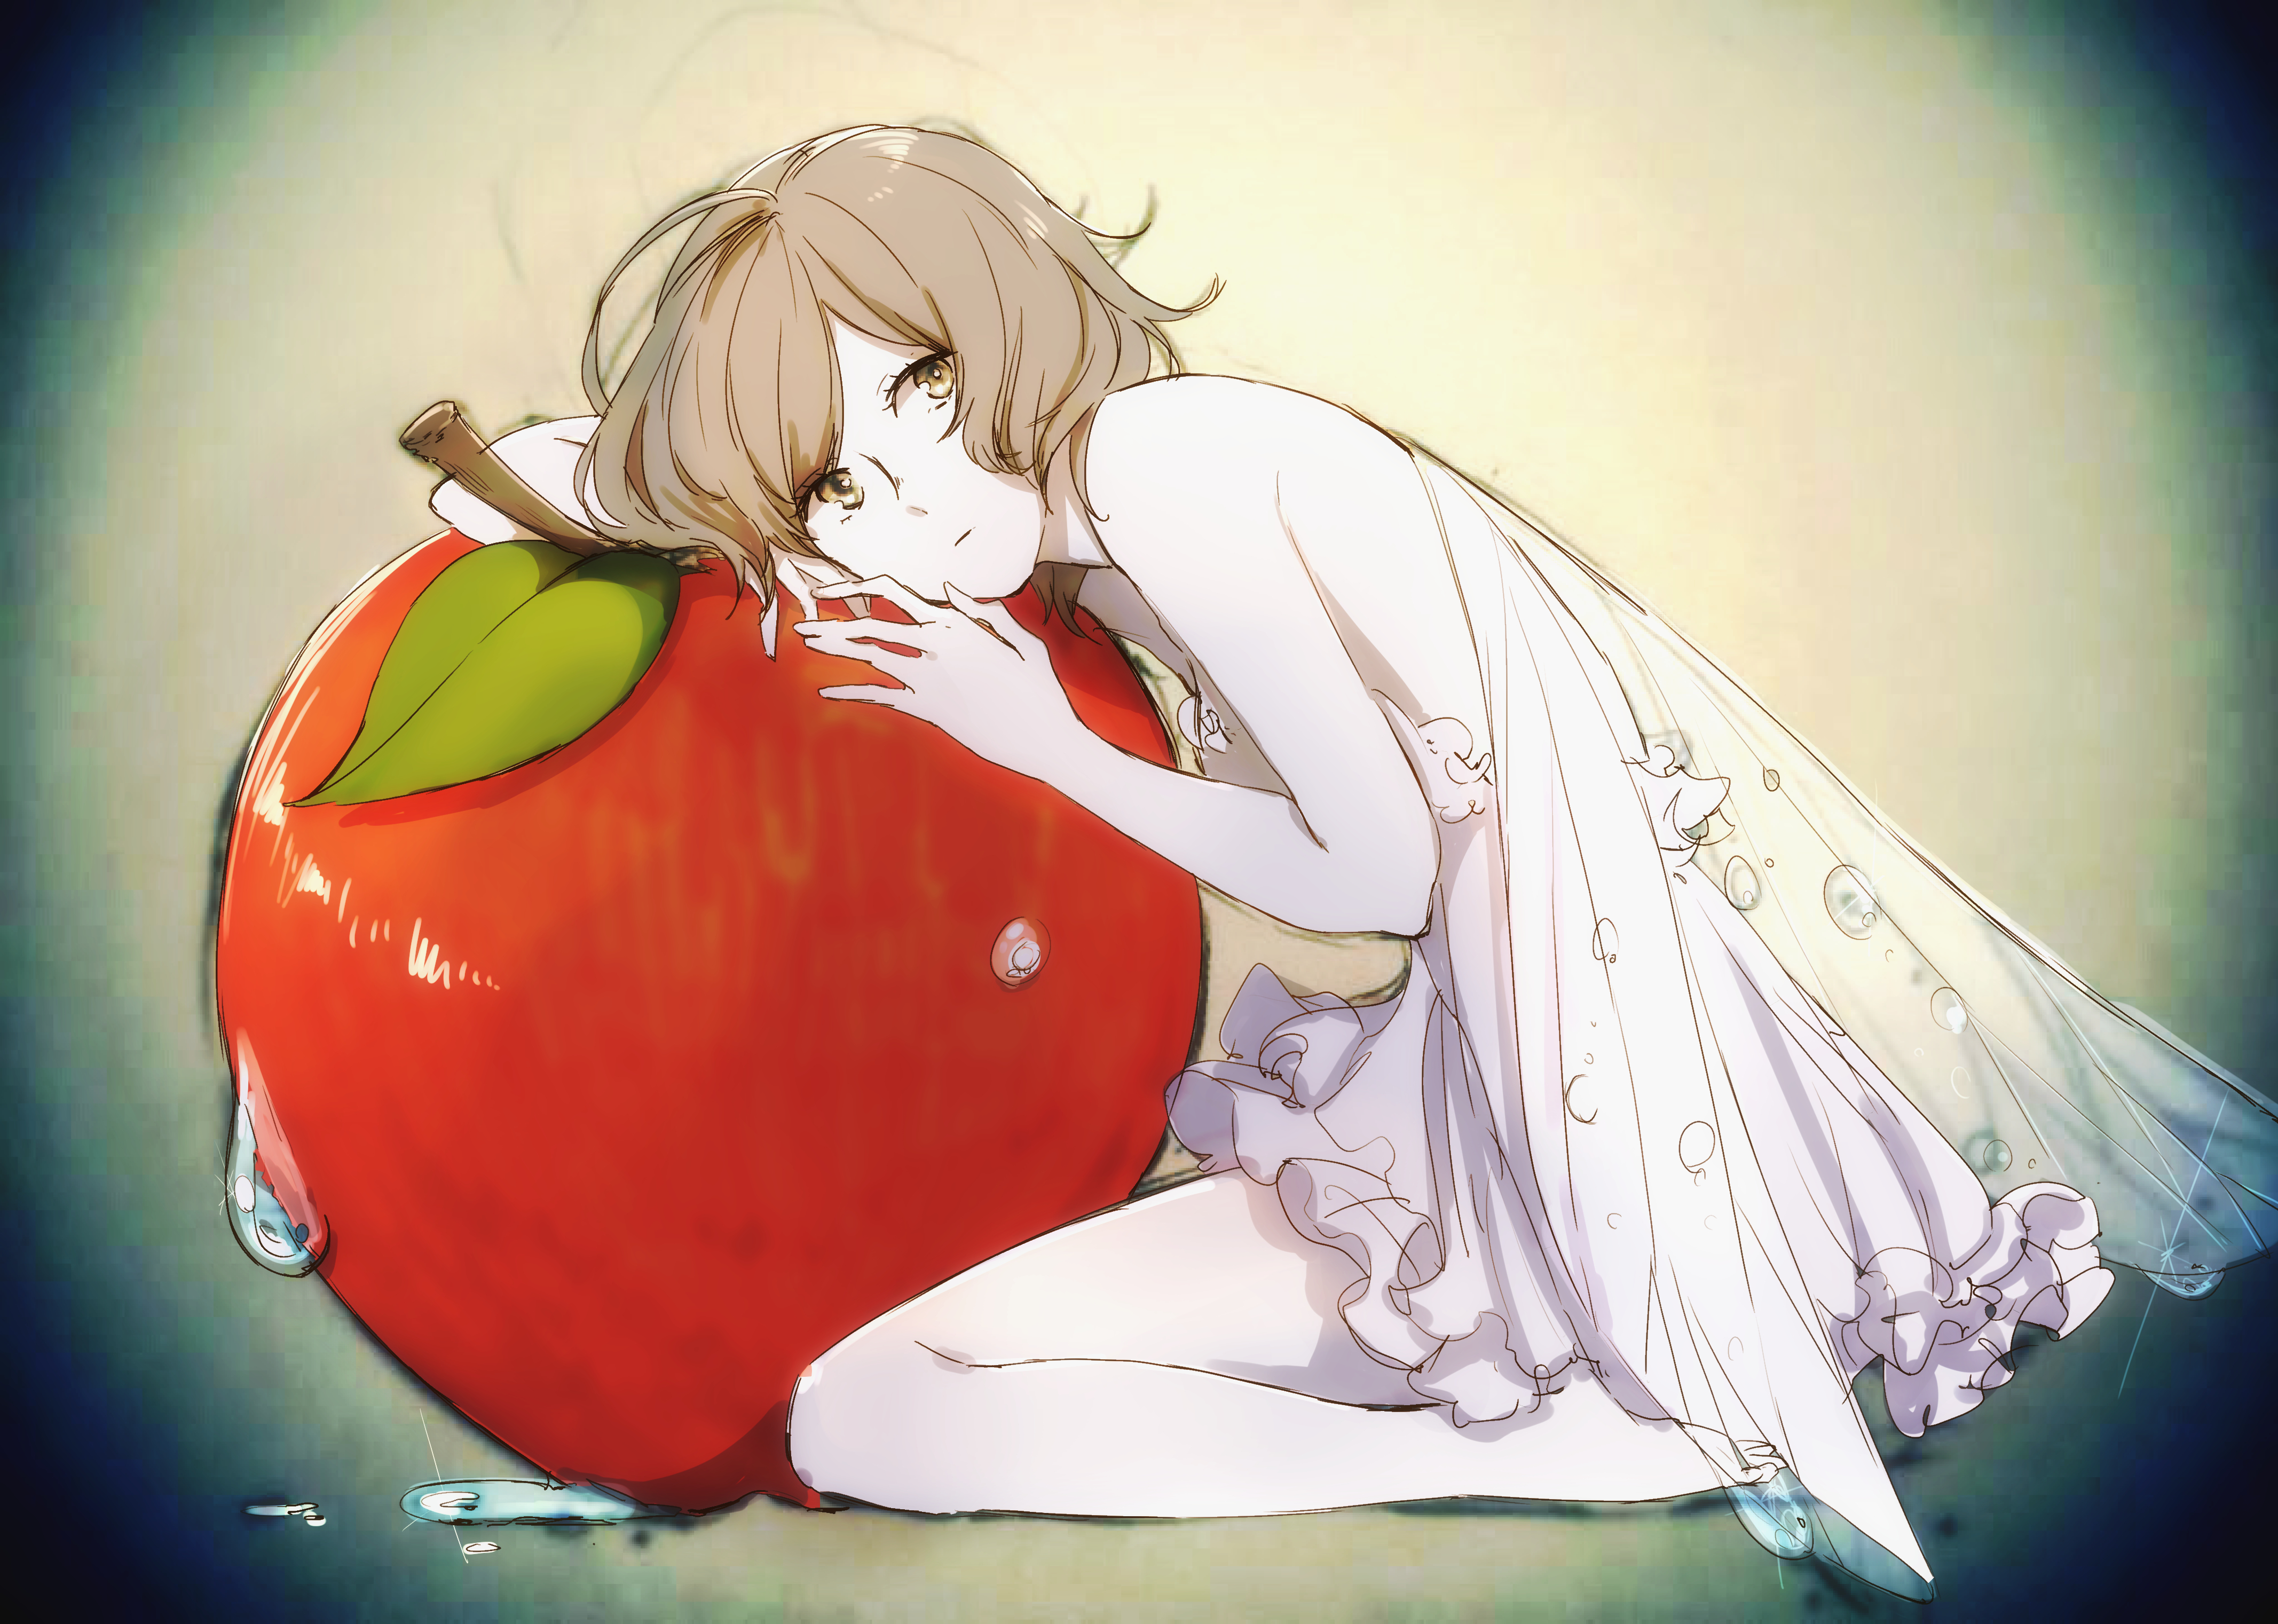 Cute Anime Girl With Apple